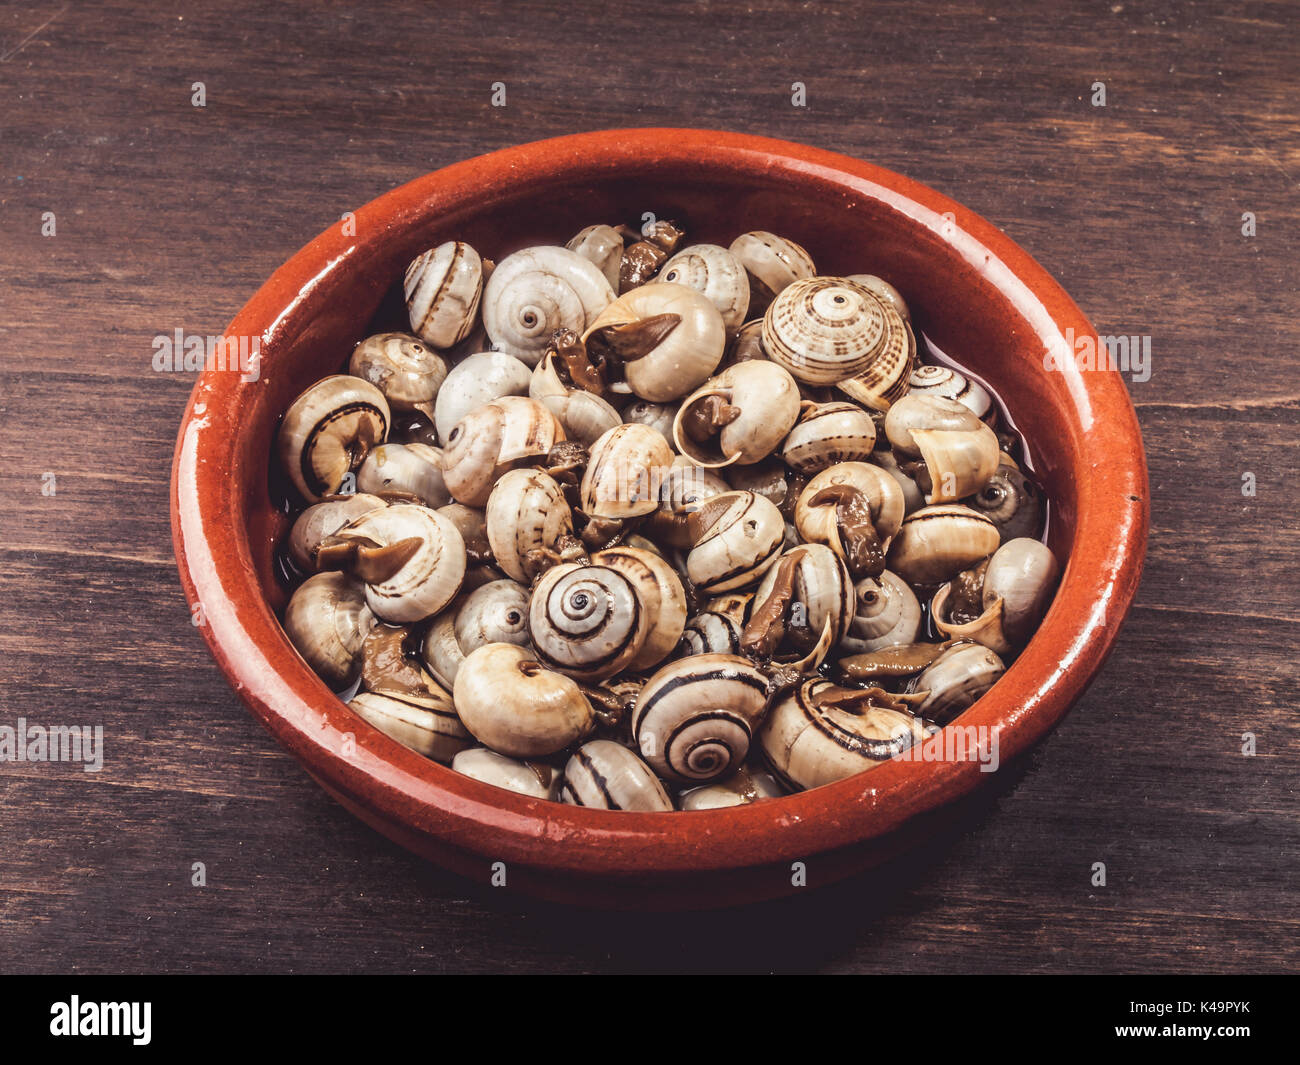 Escargots cuisinés, Escargots, Rustique servi Tapa typiquement espagnol Banque D'Images